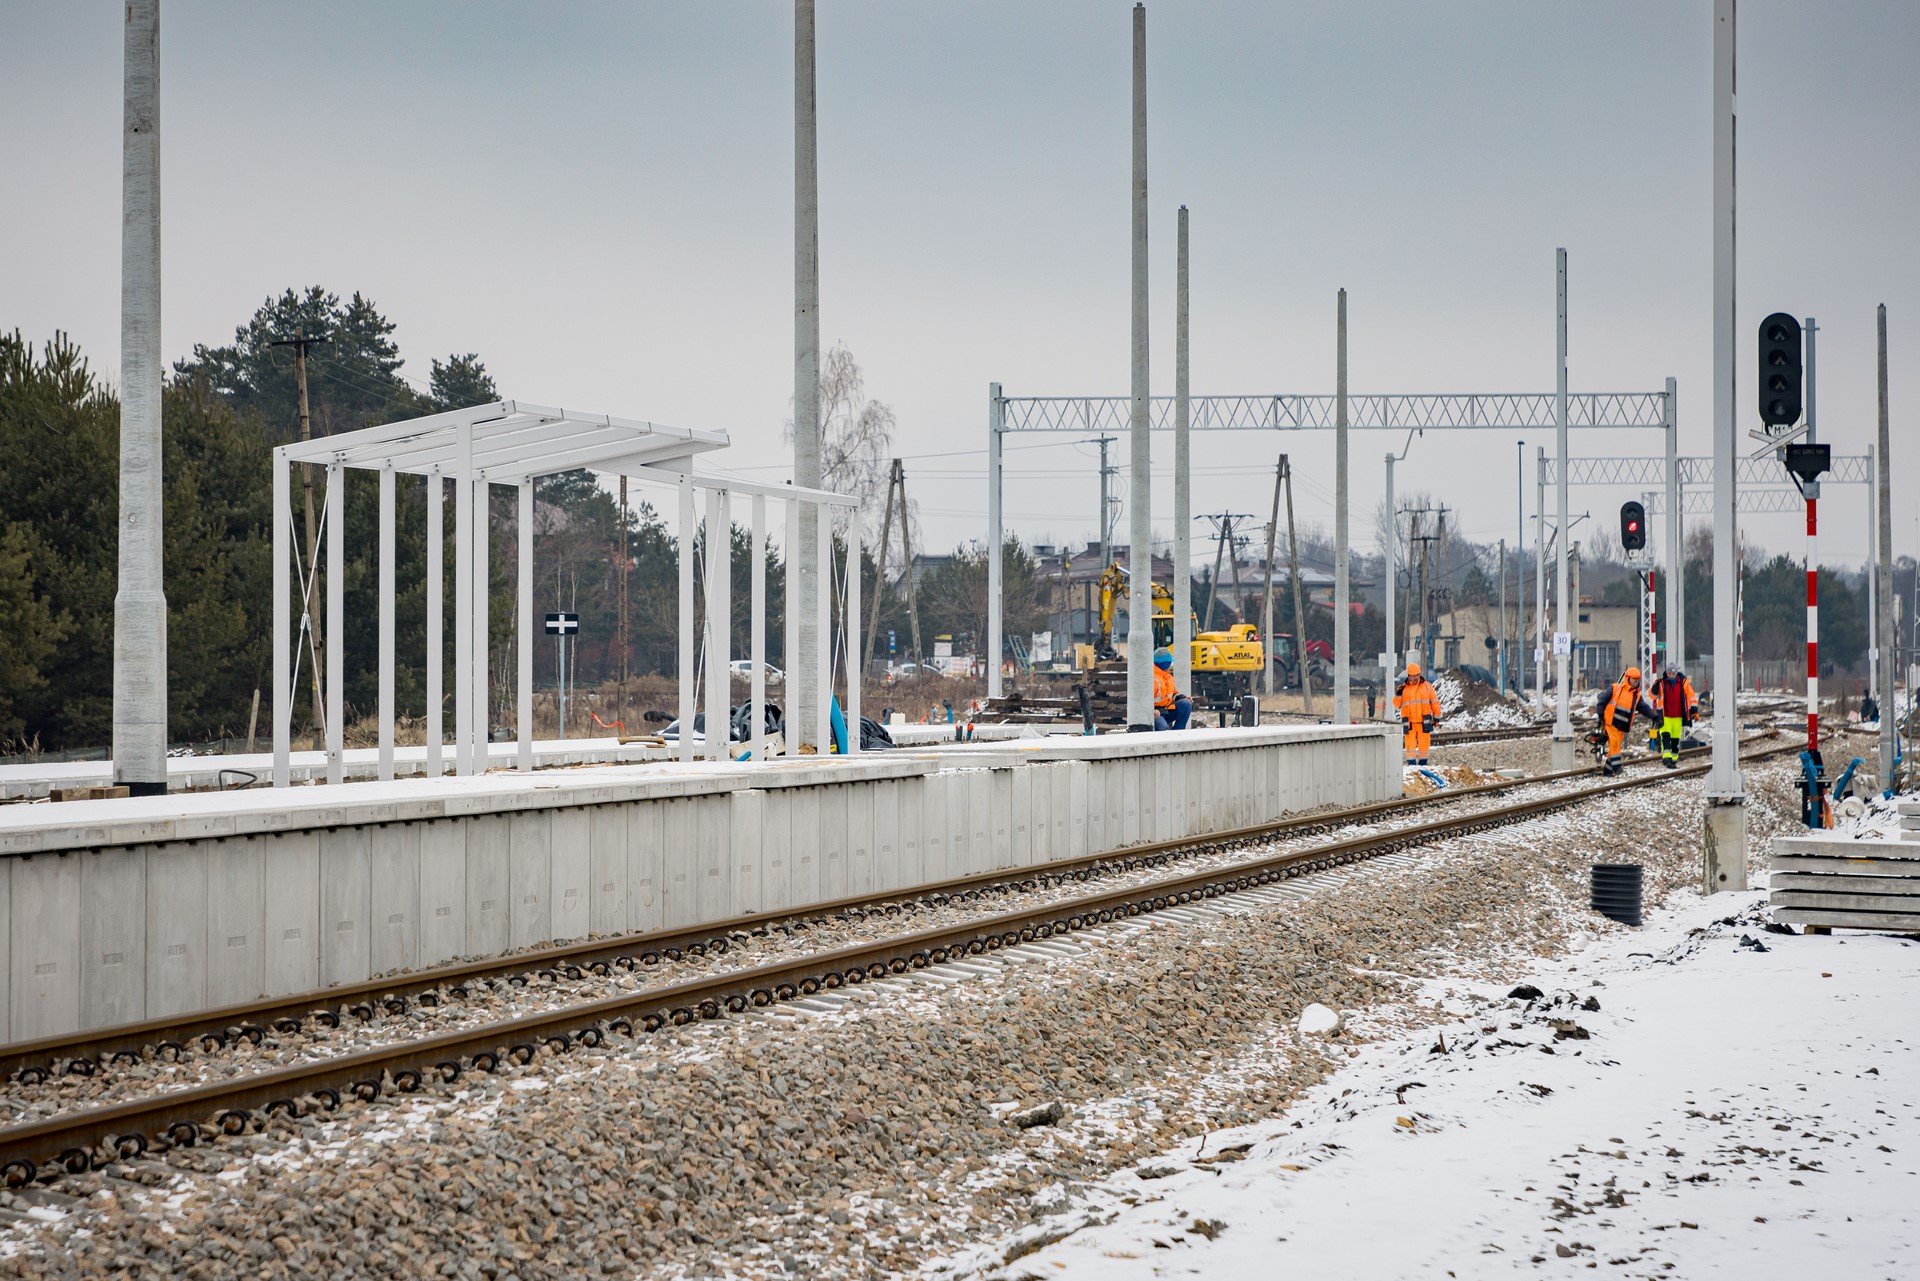 Zdjęcie: prace budowlane przy nowym peronie kolejowym.